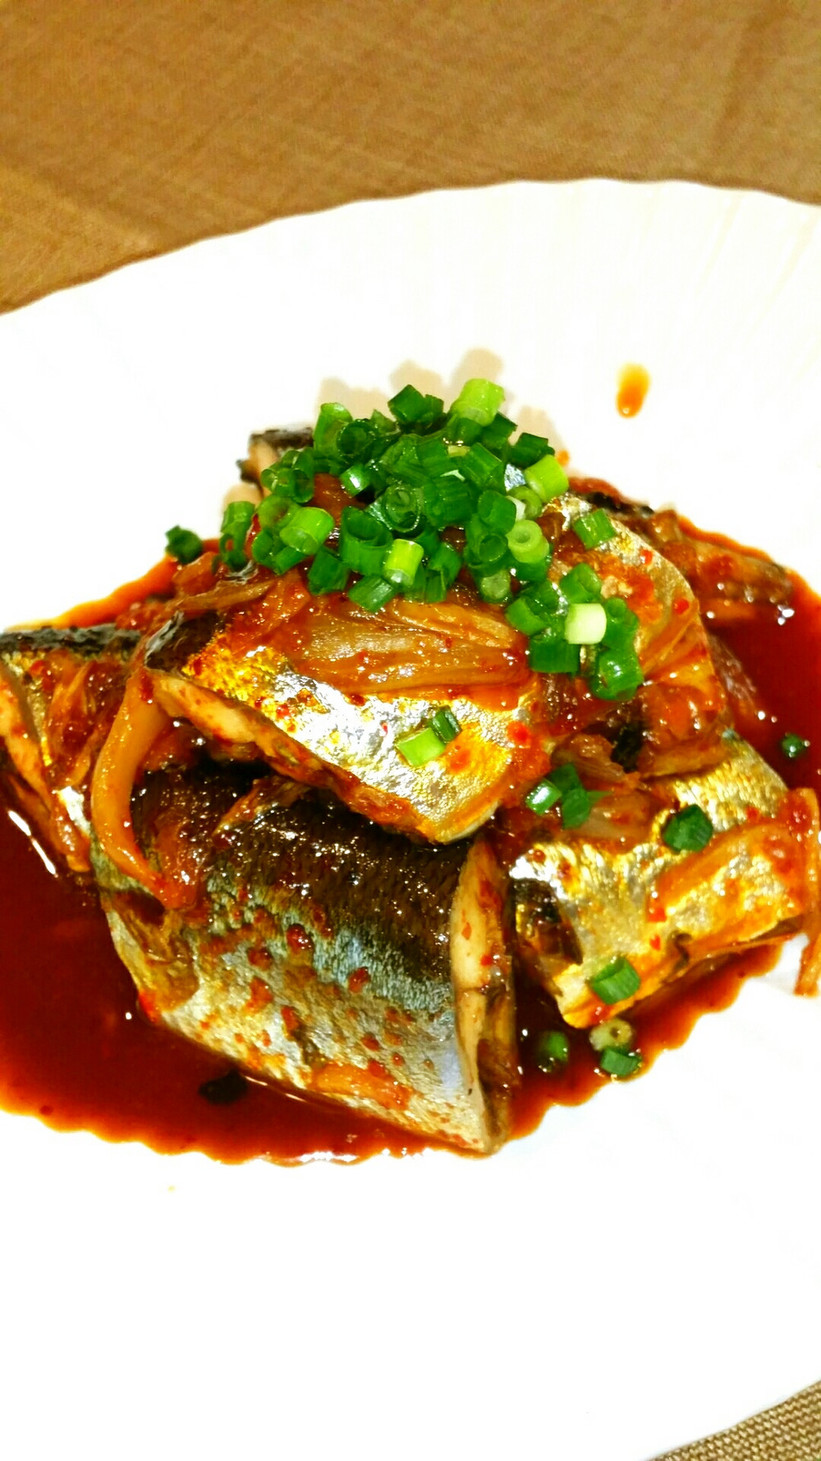 さんま⭐キムチ入り煮付け⭐美味しい煮魚⭐の画像